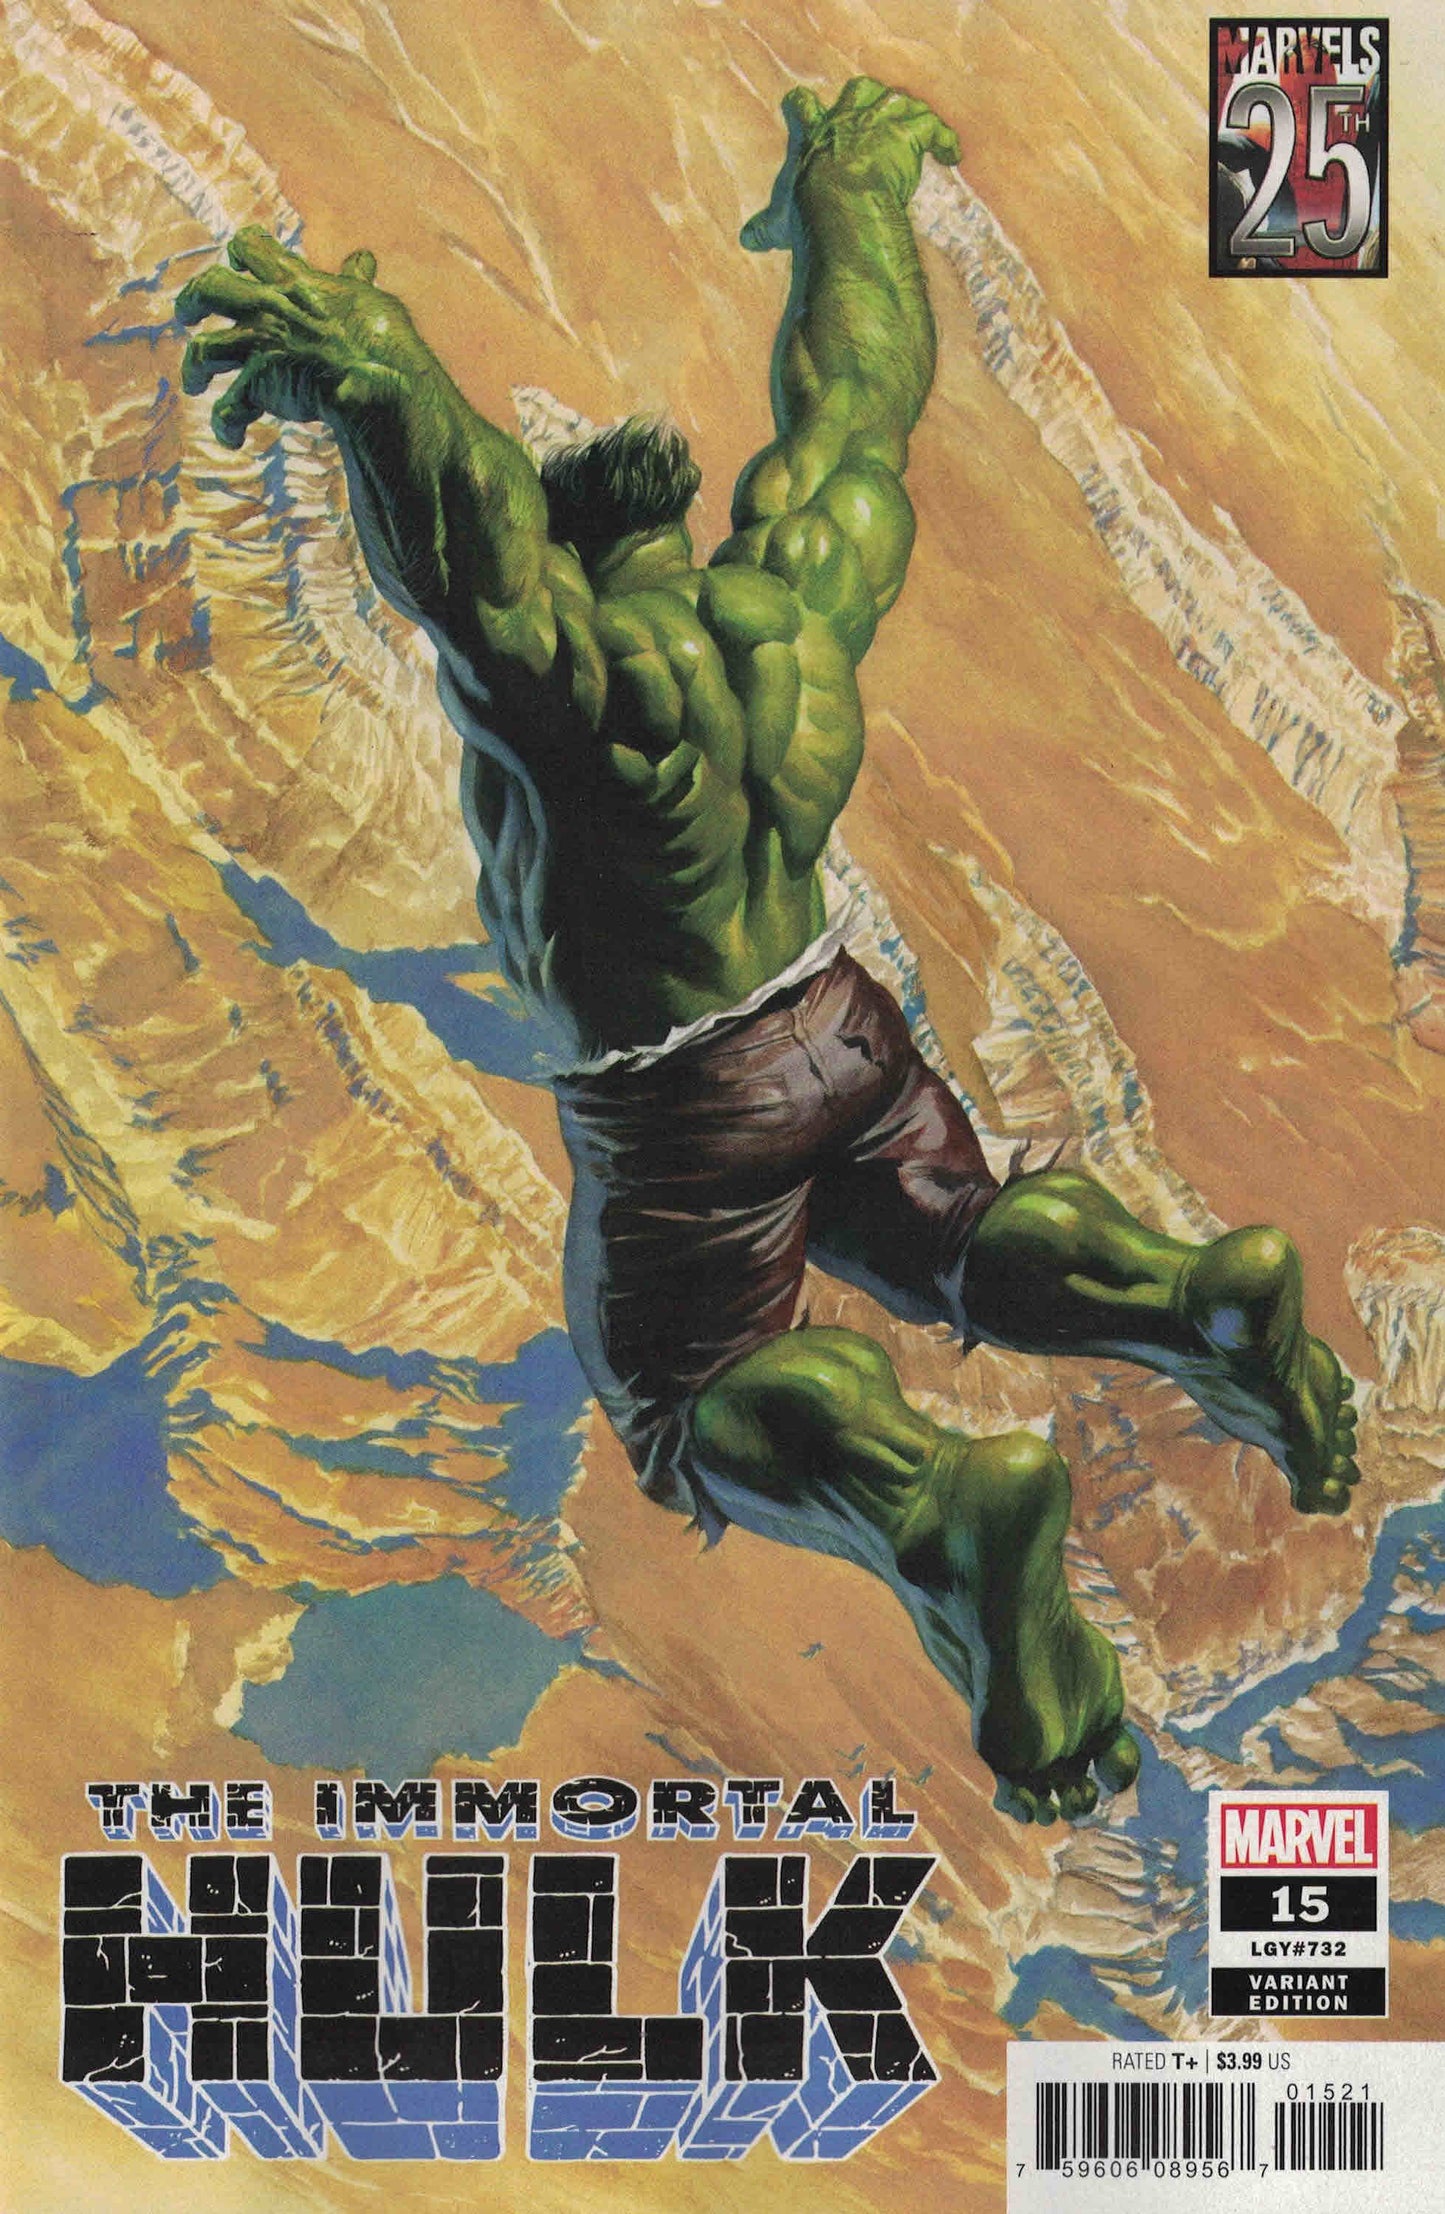 Immortal Hulk #15 - Ross Cvr B